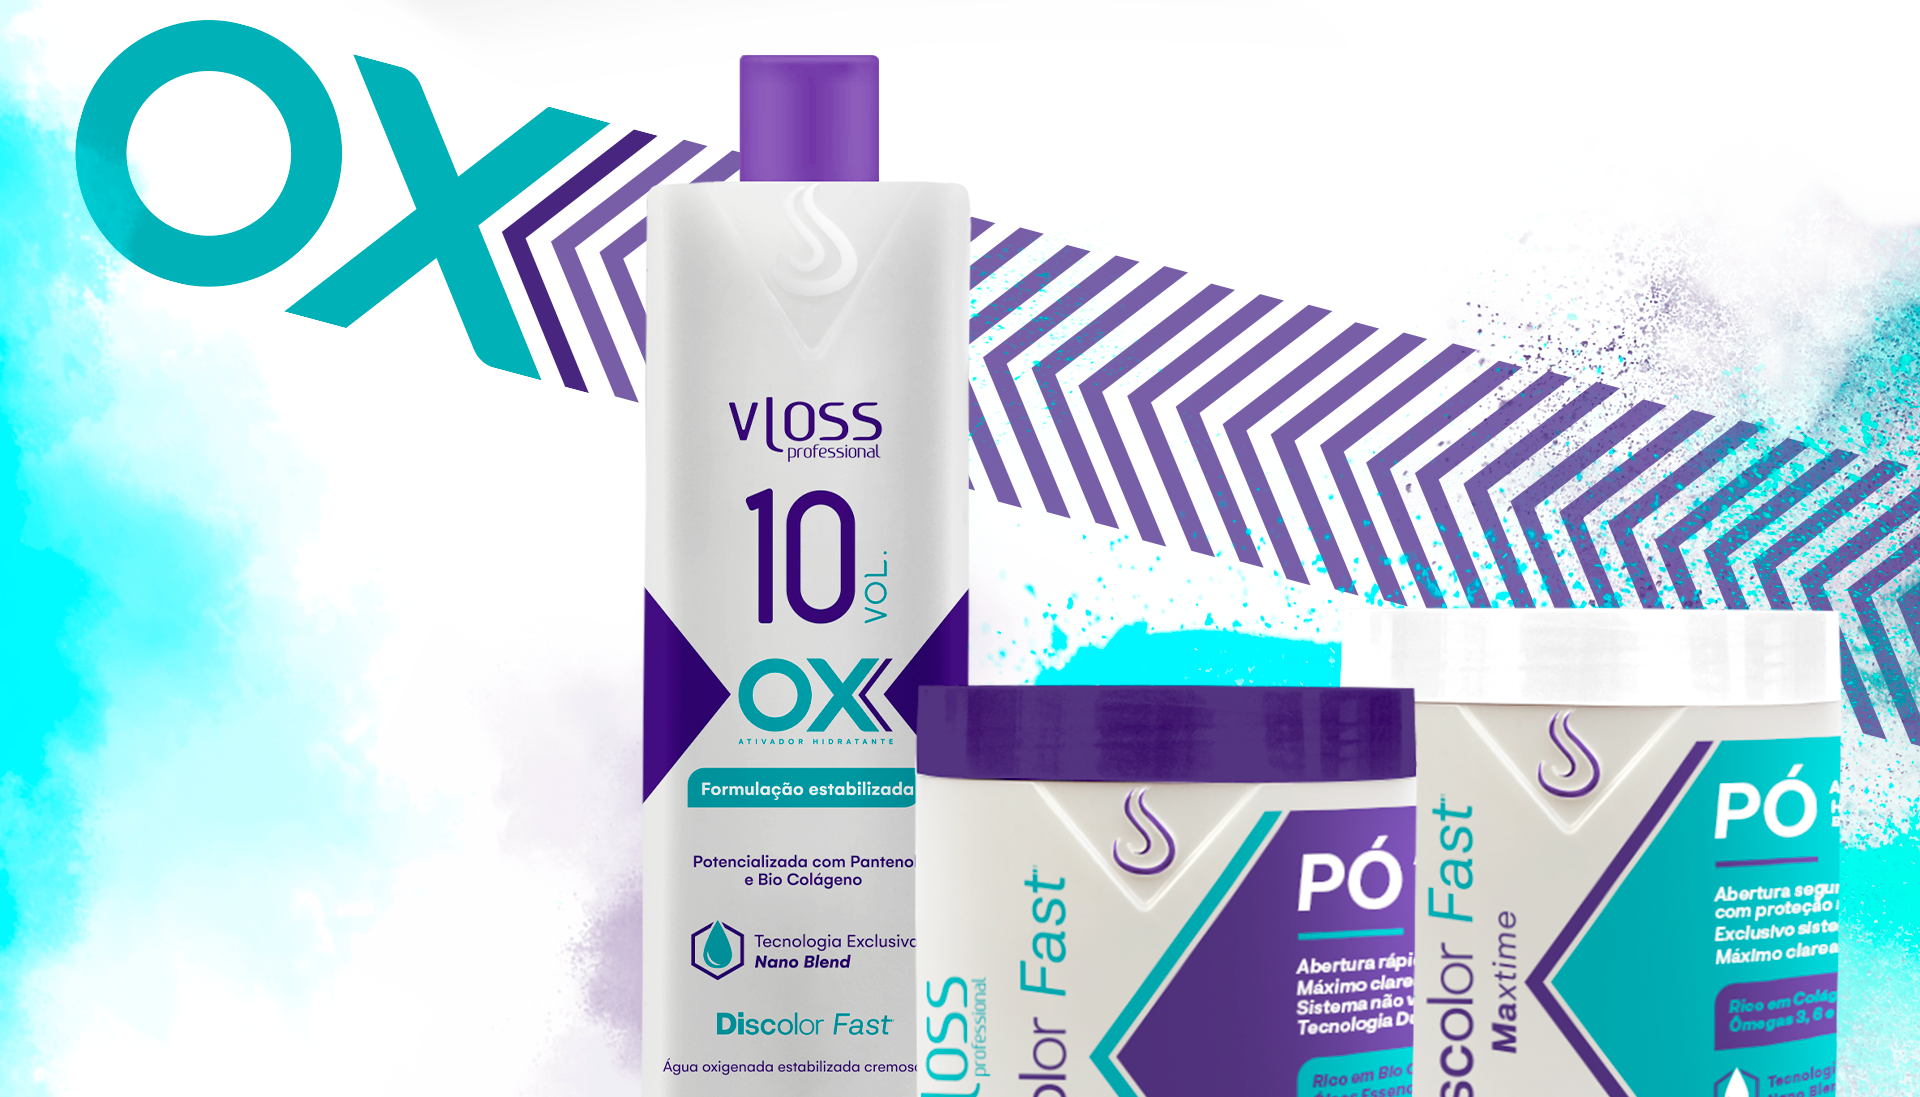 Vloss - OX 